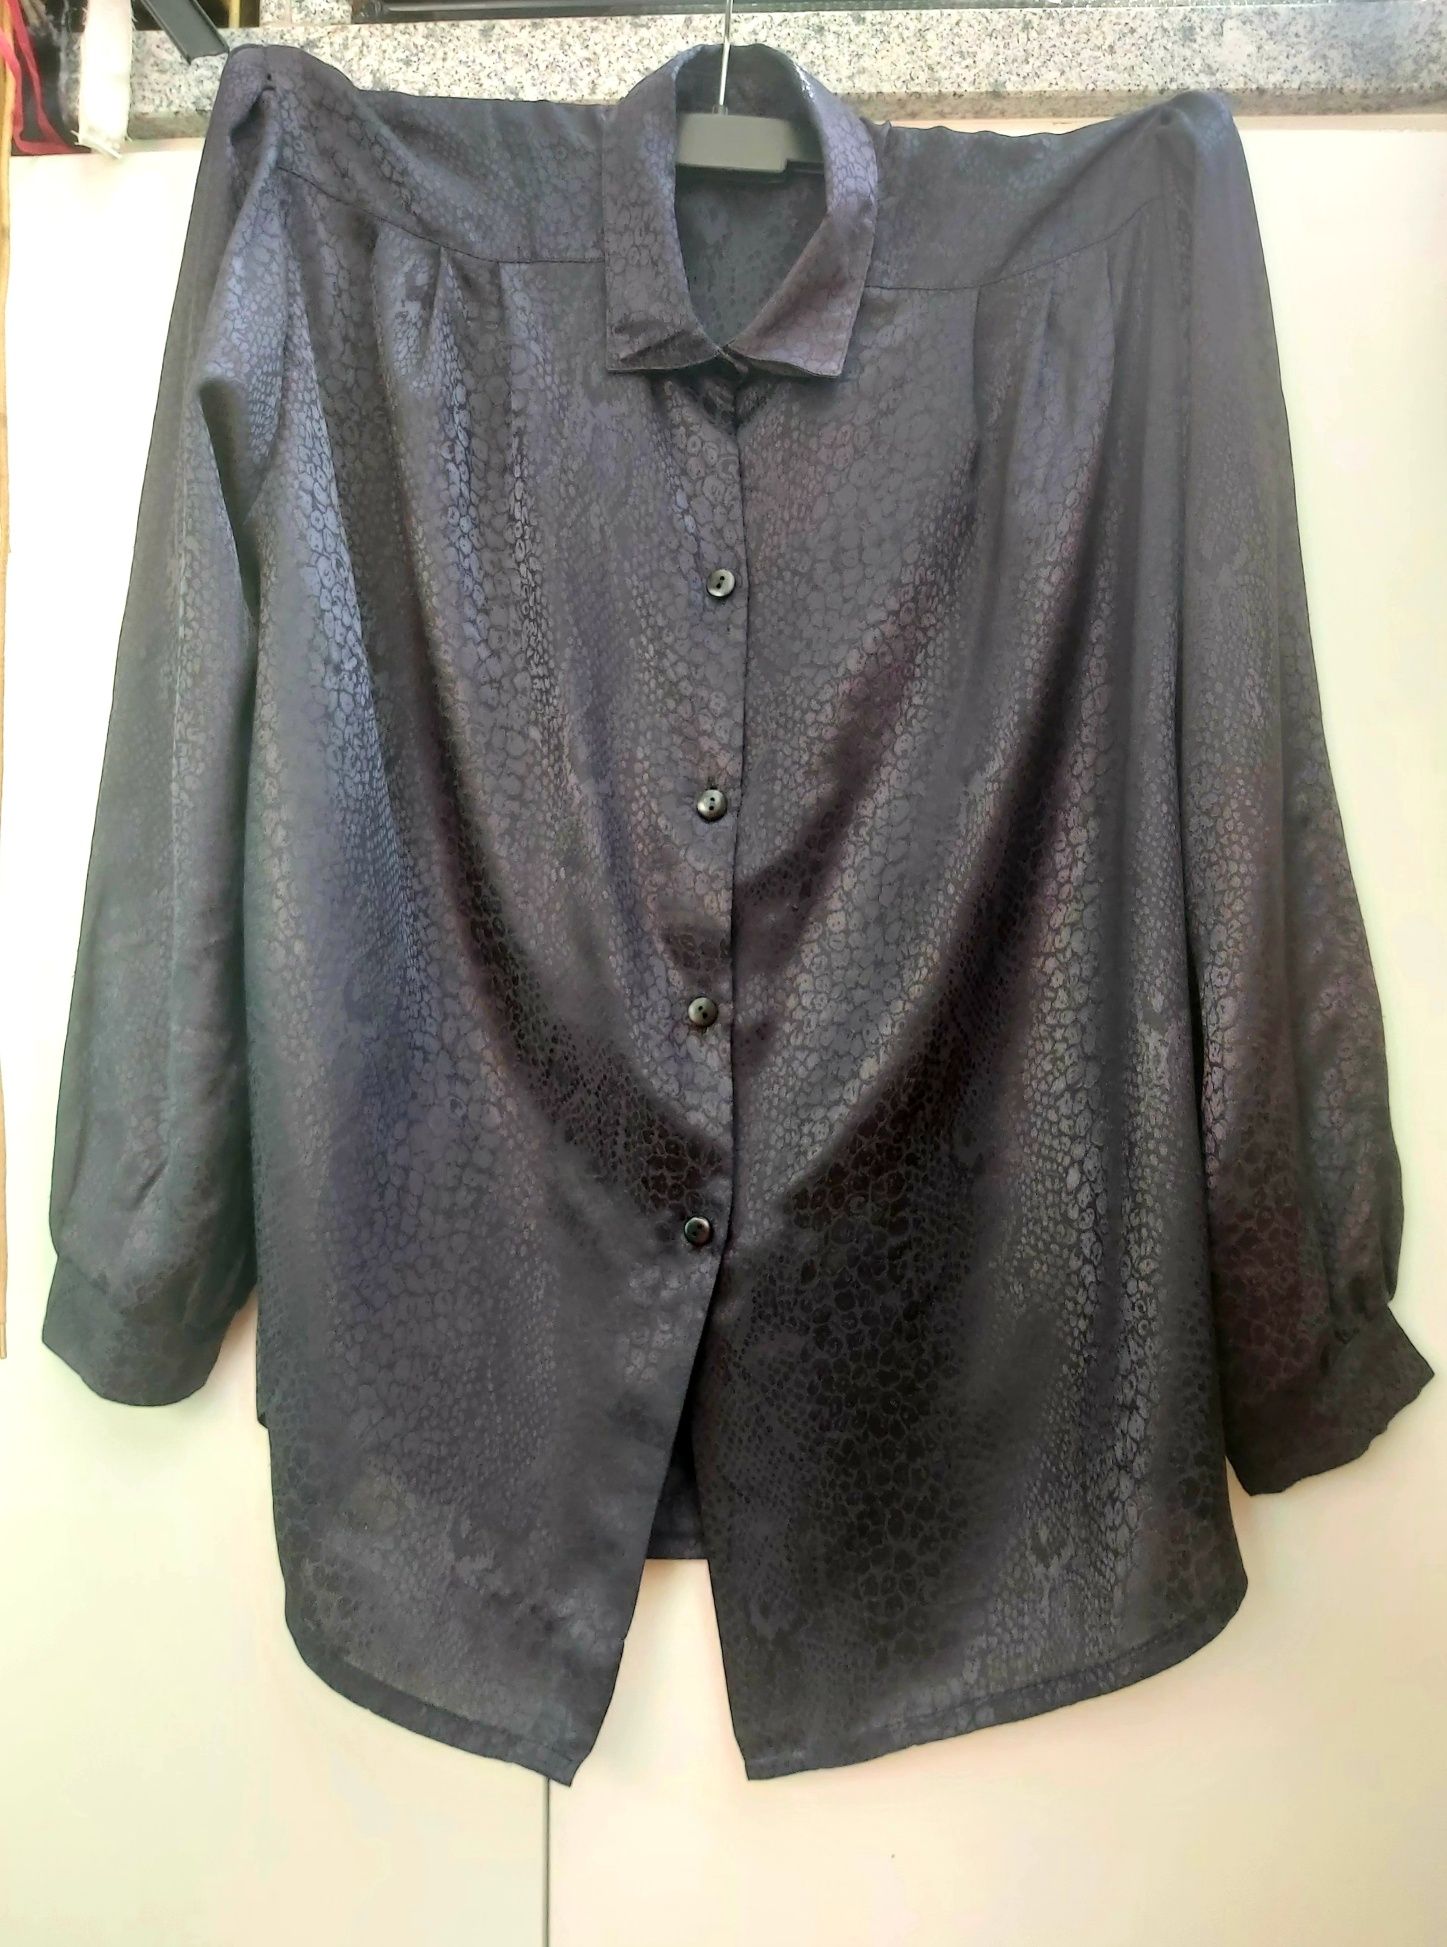 Camisa/Blusa preta com print cobra